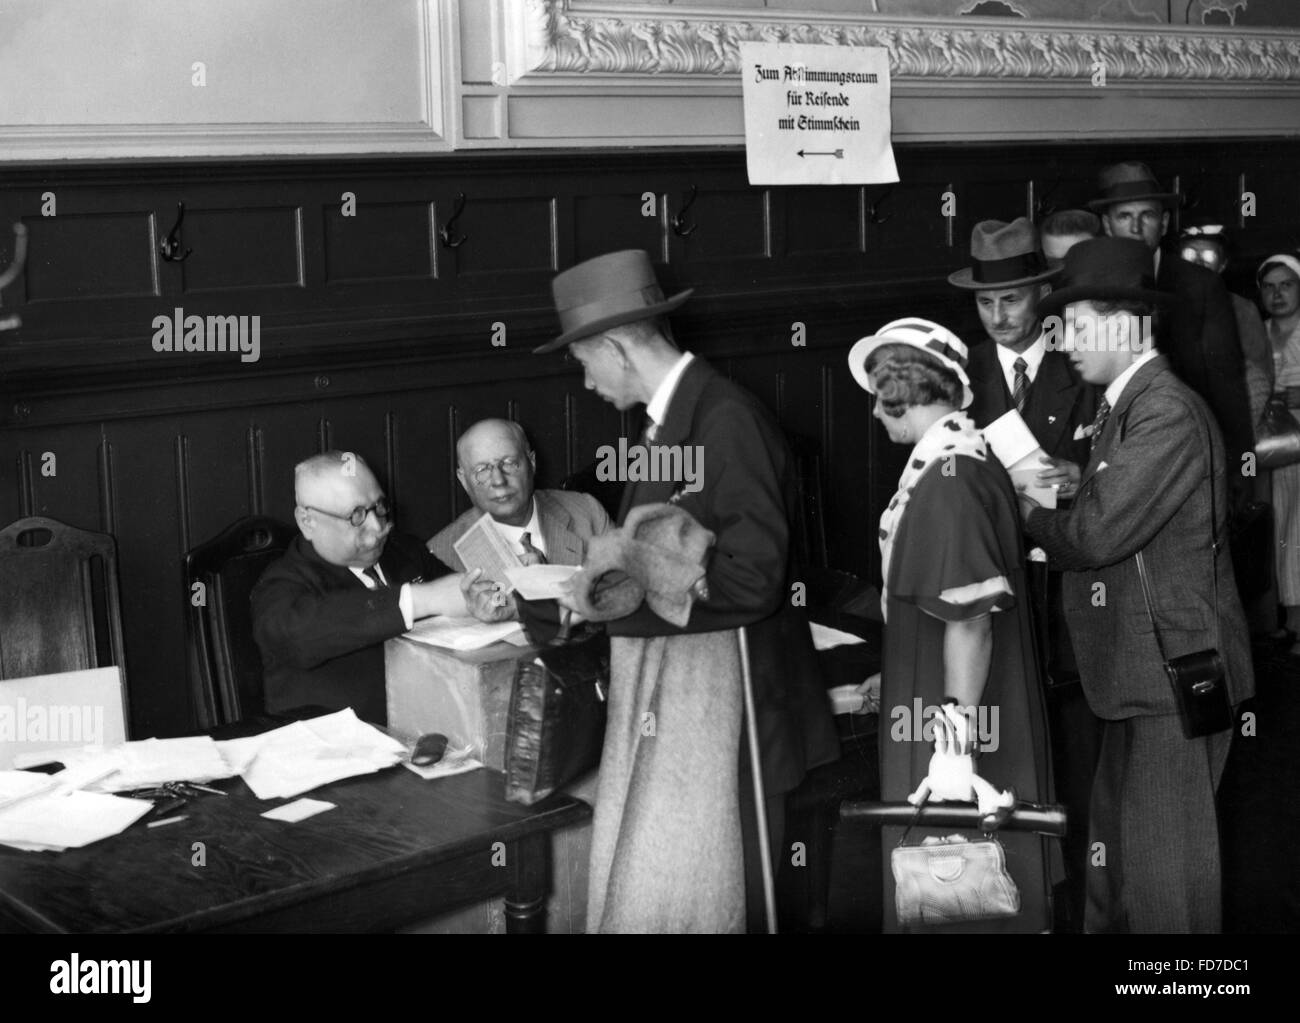 Au vote à l'Anhalter Bahnhof référendum sur le chef de l'état de l'Empire allemand, 1934 Banque D'Images